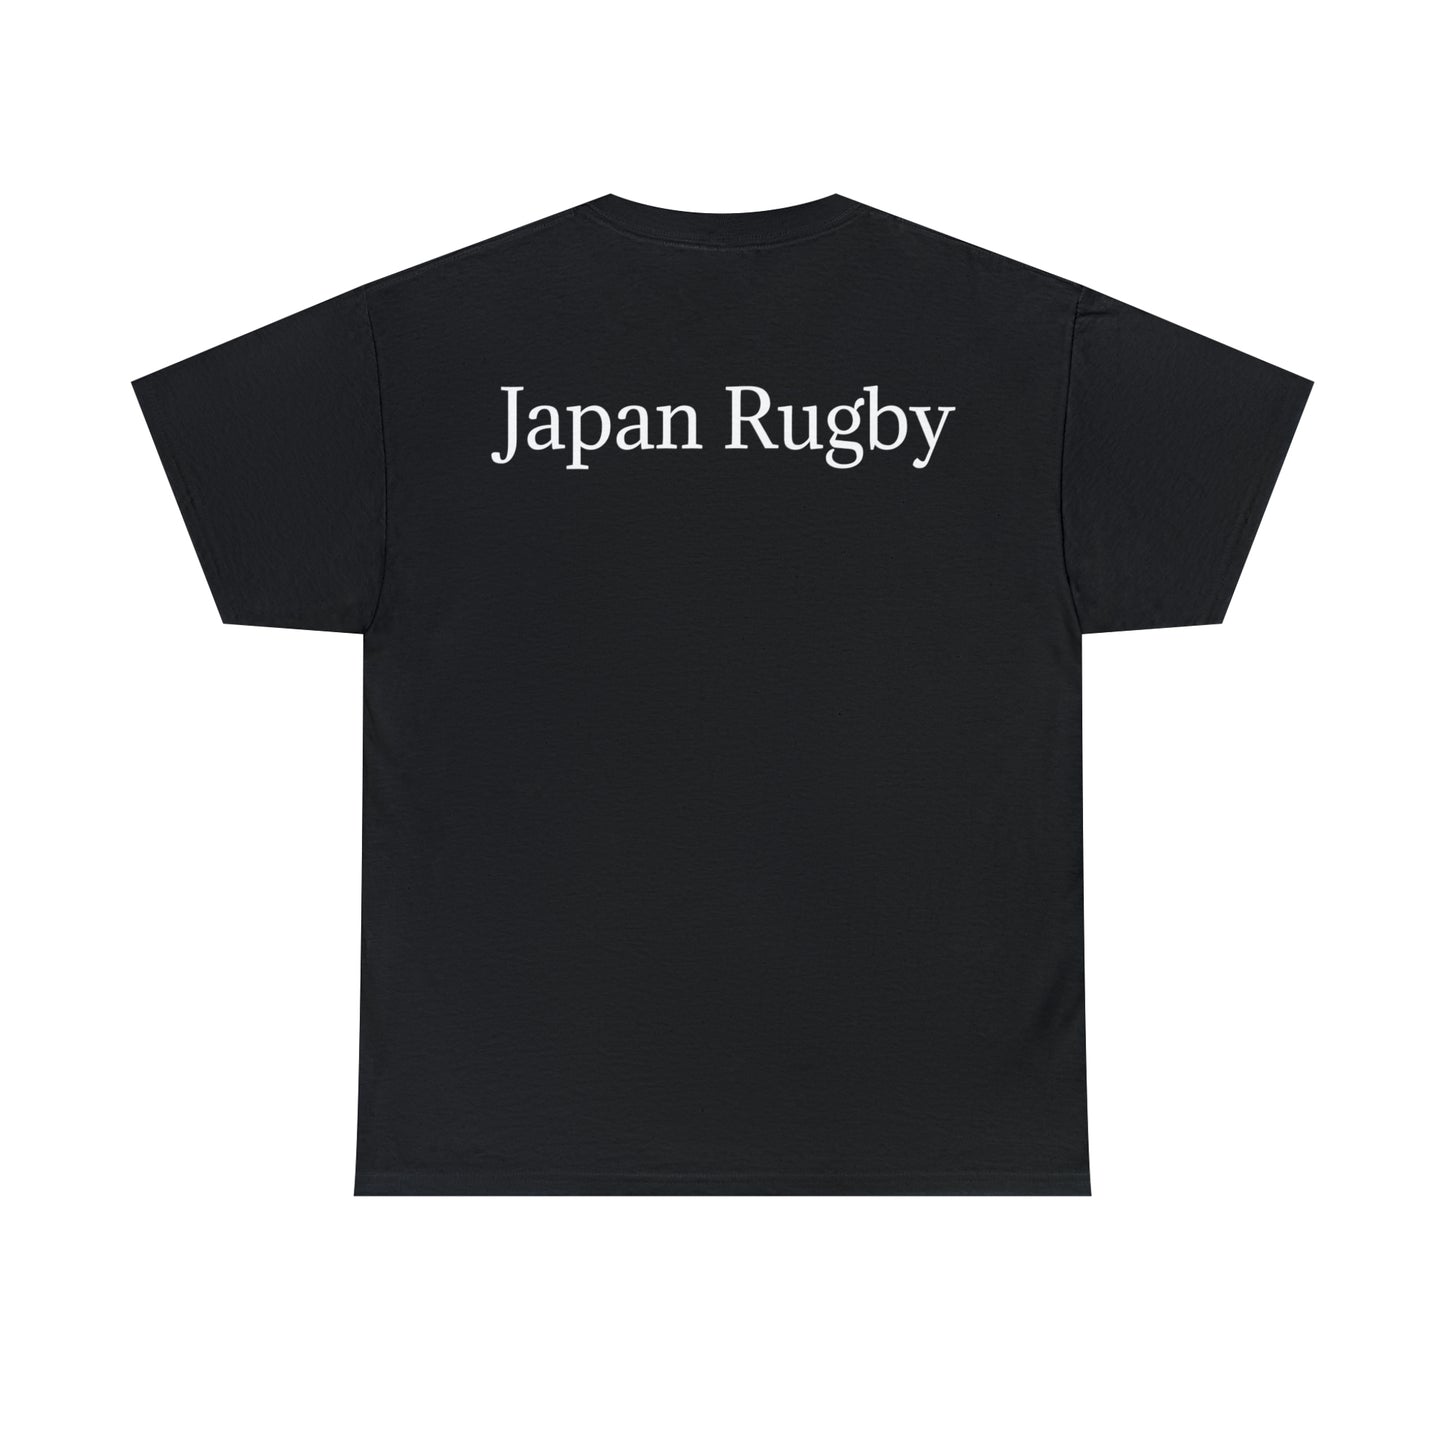 Ready Japan - dark shirts